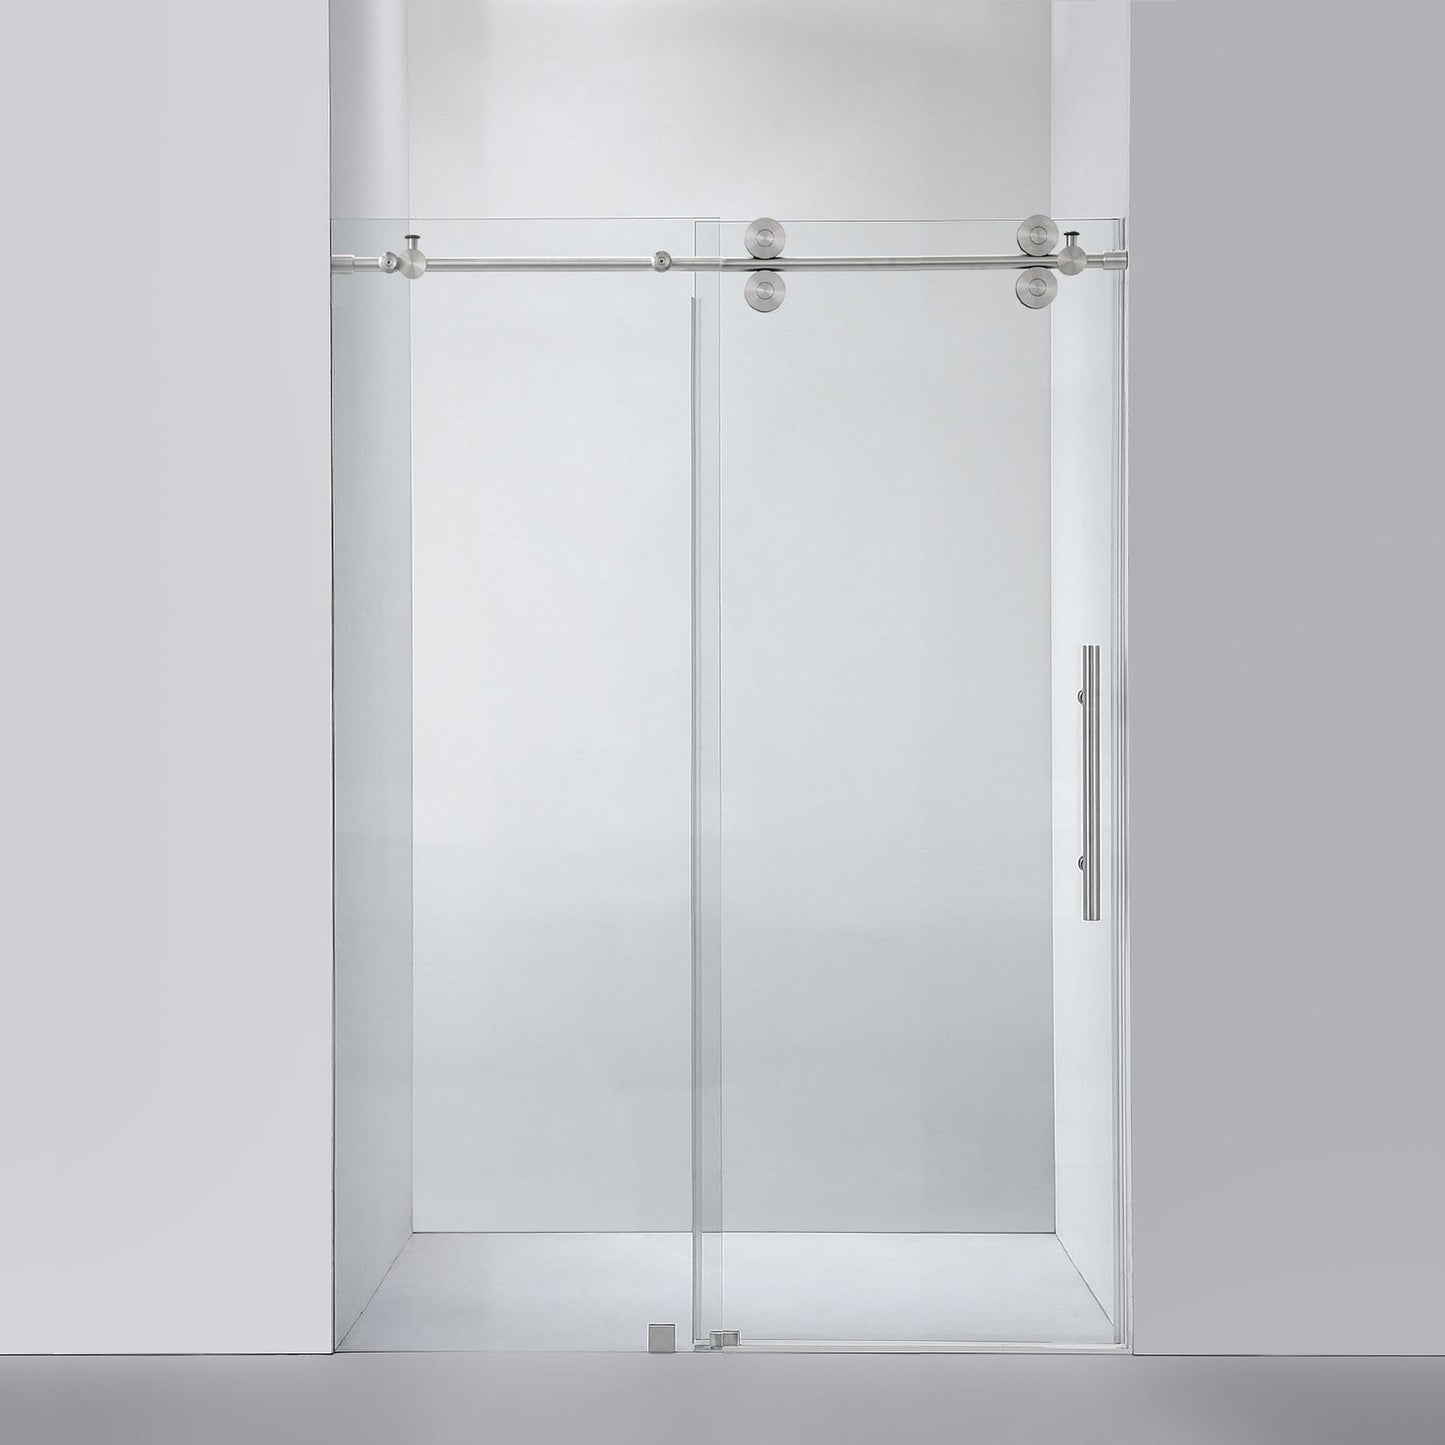 Vinnova Villena 52" x 78" Brushed Nickel Single Sliding Frameless Shower Door